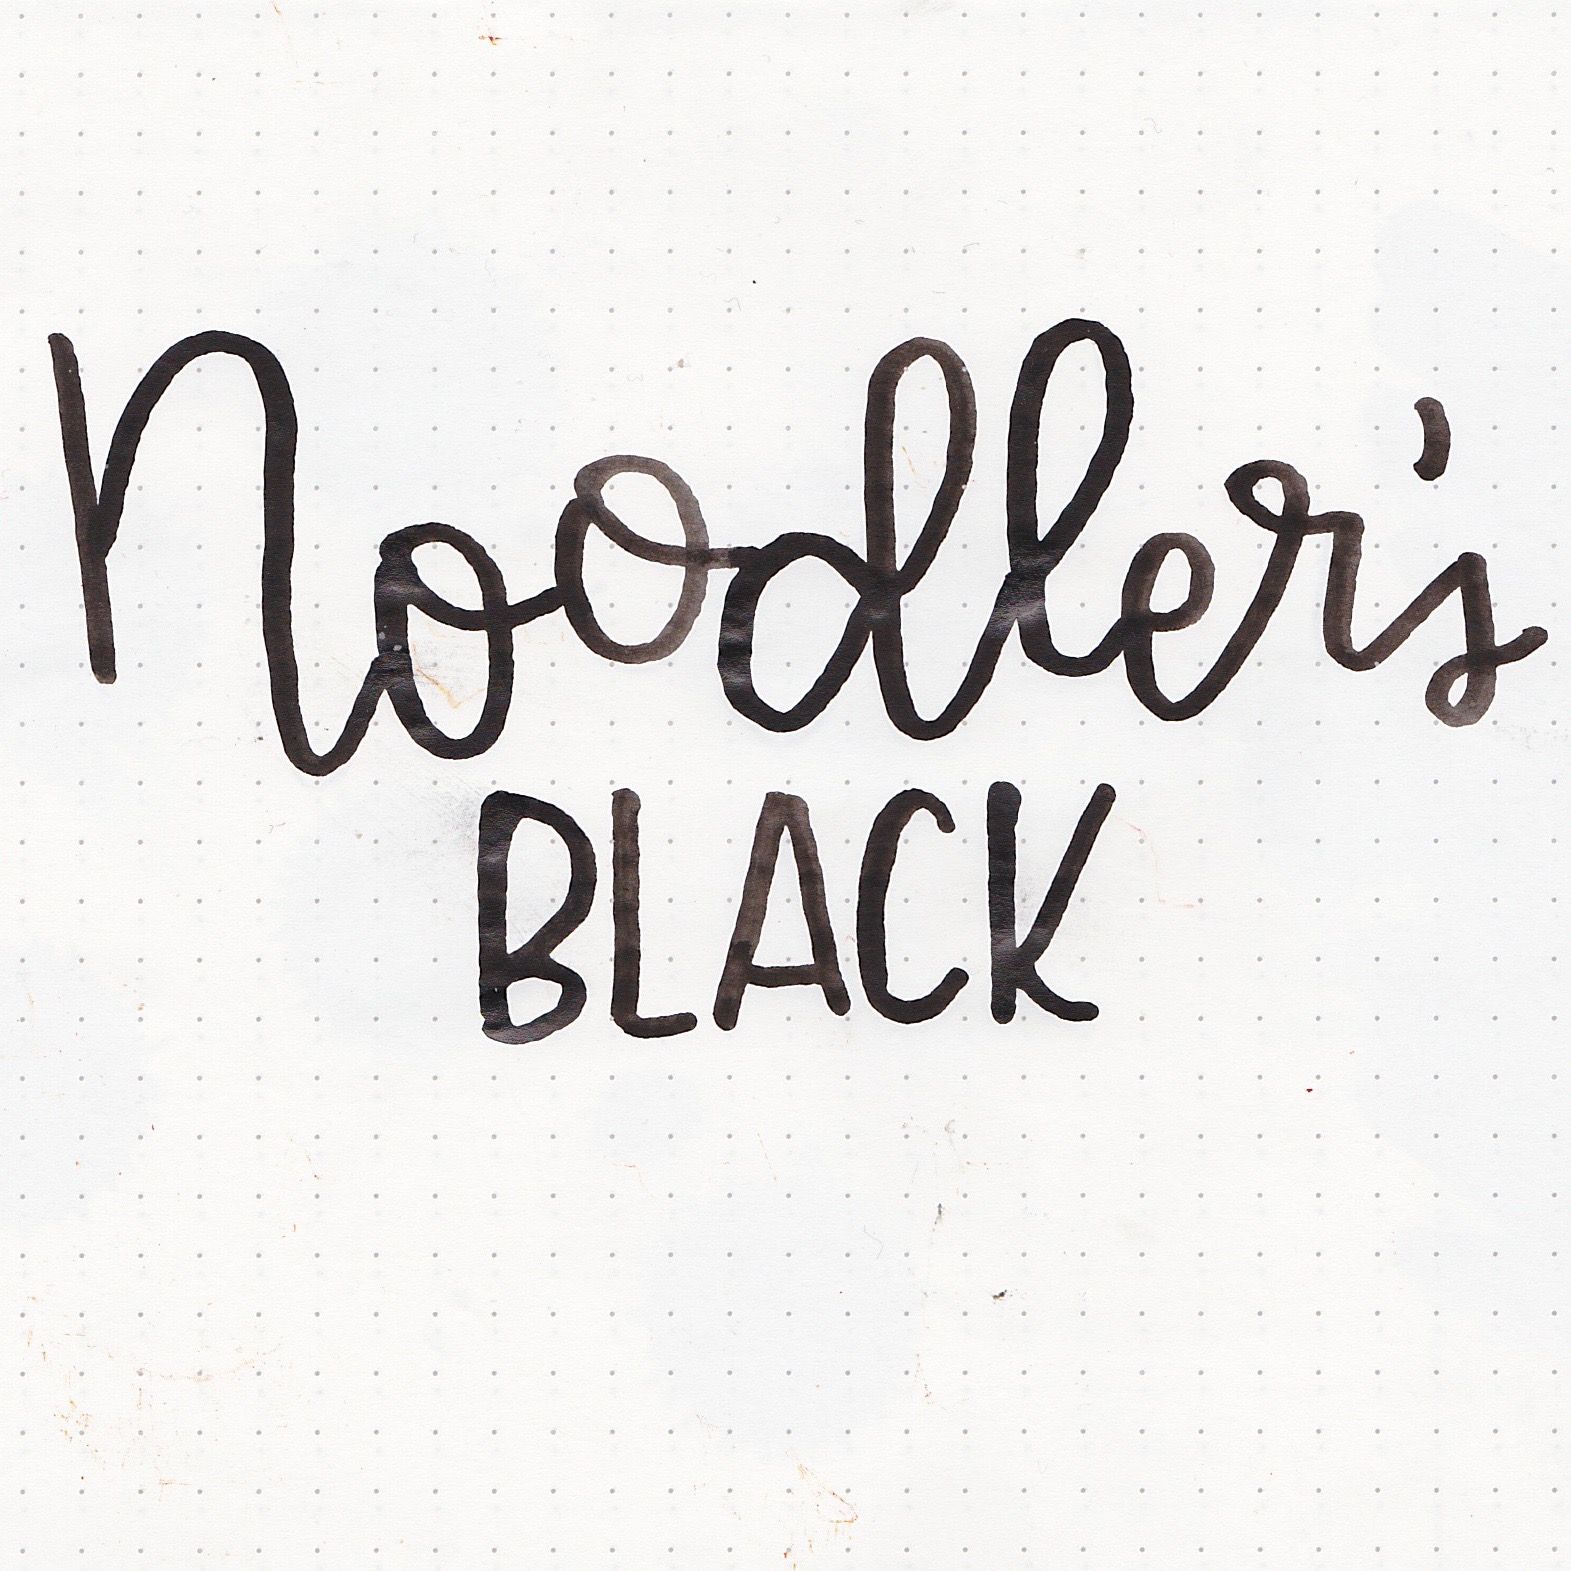 ink review: noodler's black revisited - Seize the Dave